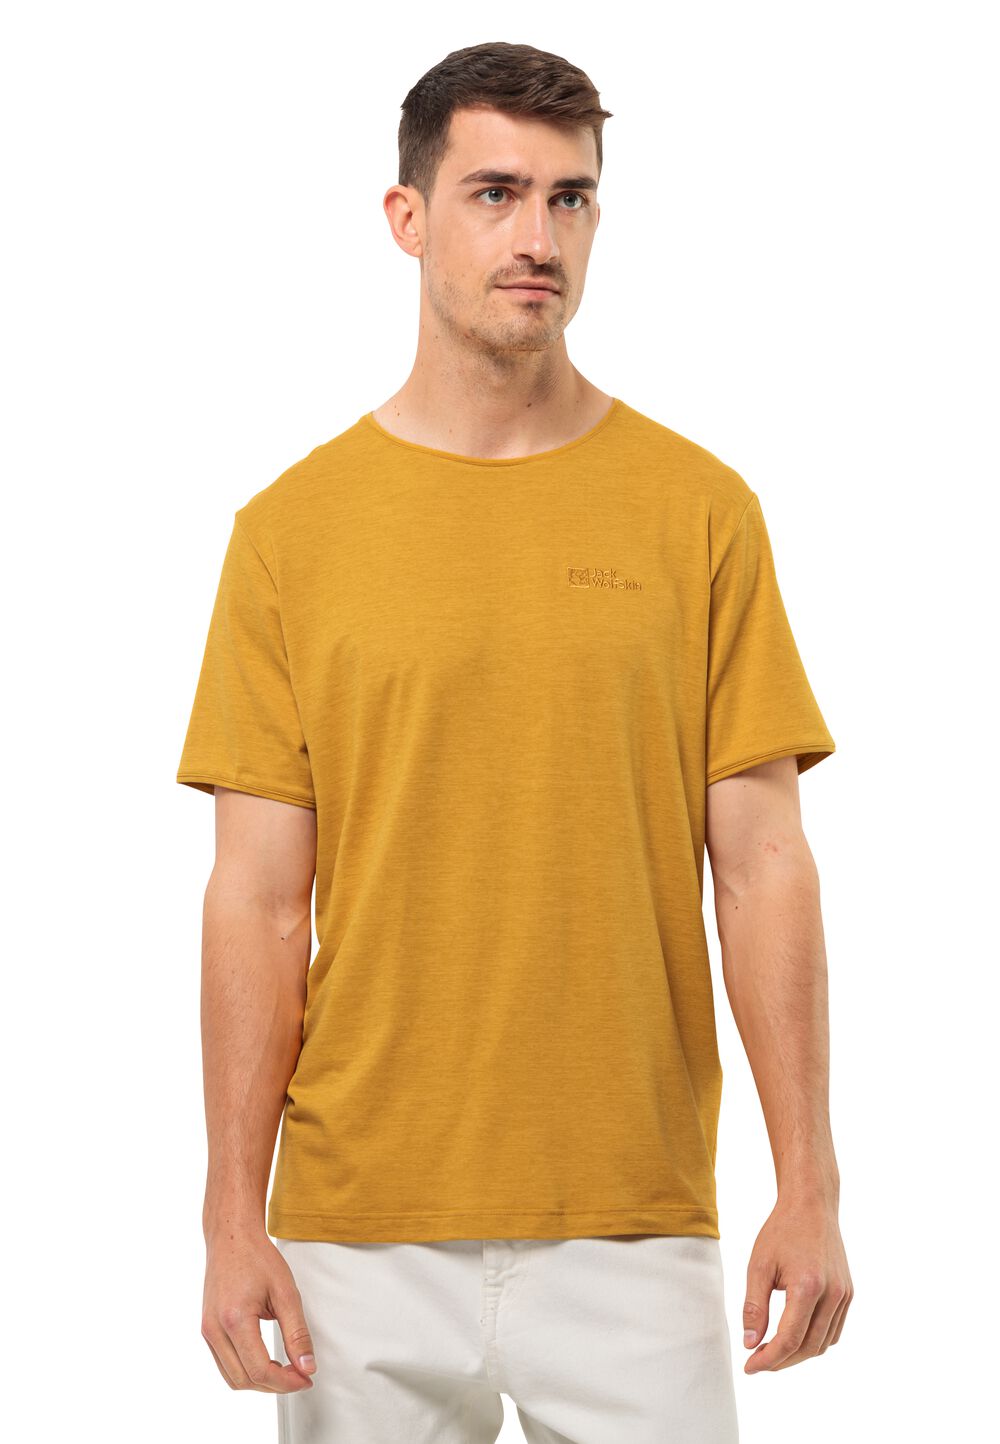 Jack Wolfskin Travel T-Shirt Men Functioneel shirt Heren 3XL bruin curry